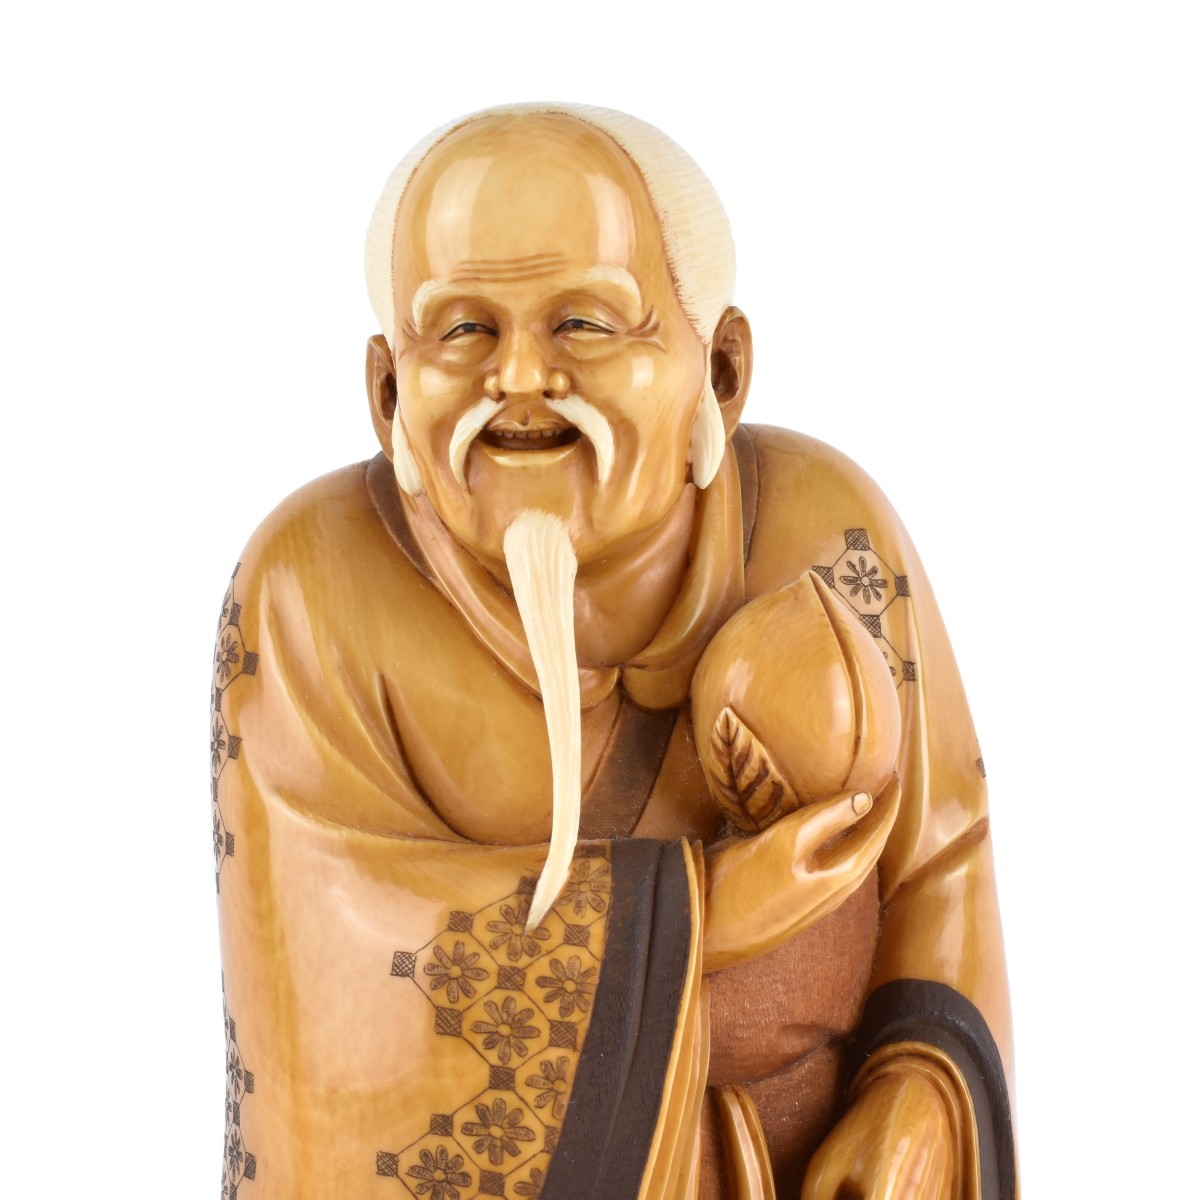 Japanese Ivory Figurine